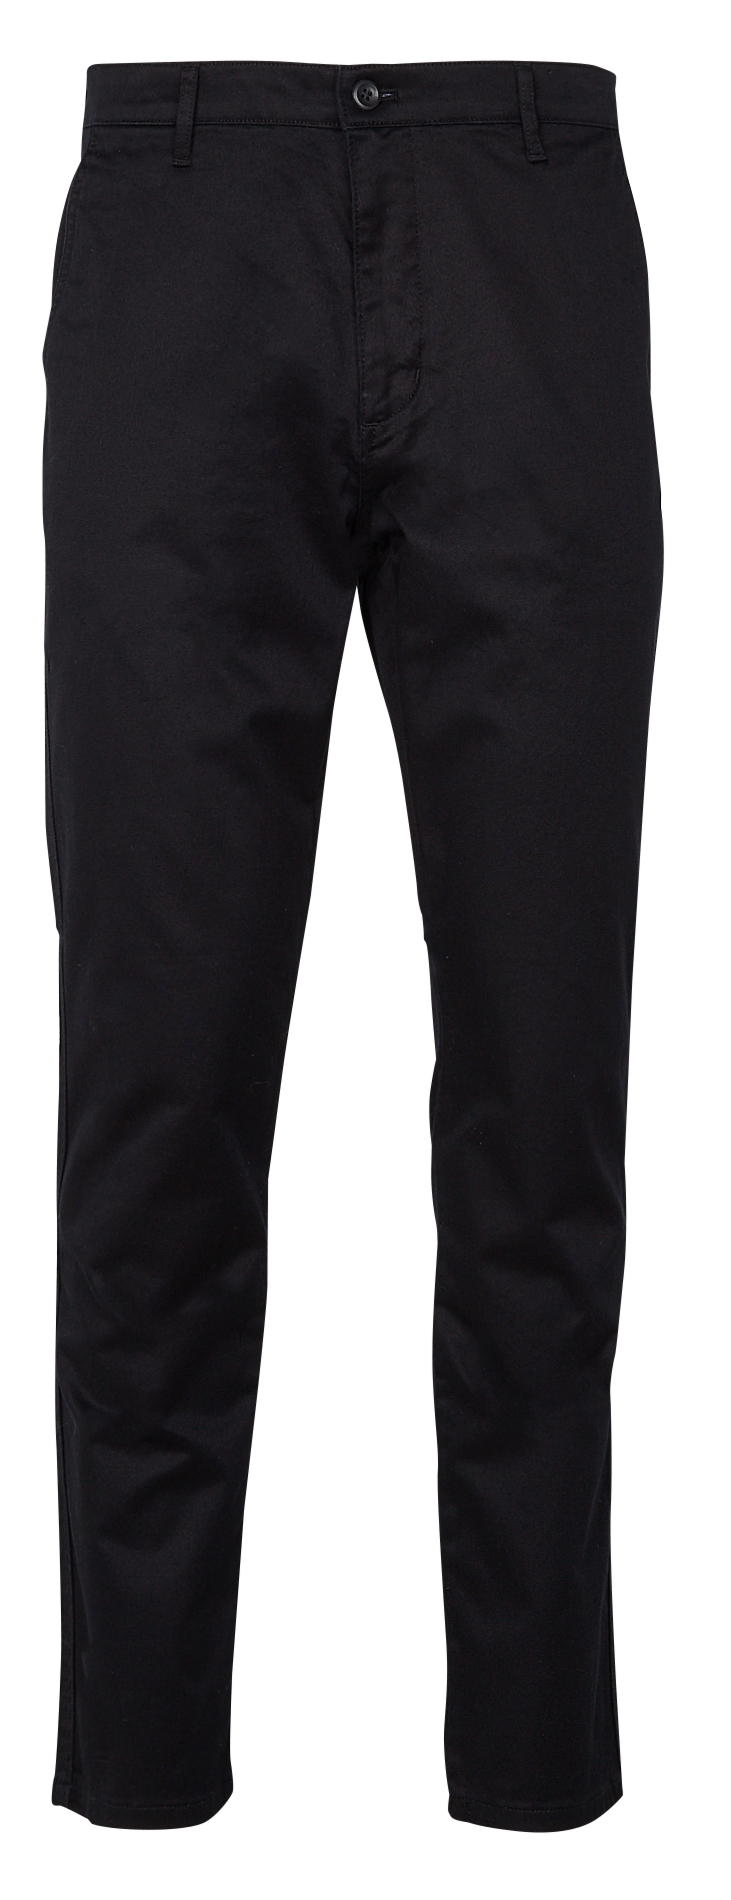 Dockers Men's Straight Fit Signature Lux Cotton Stretch Khaki Pant, Cloud,  30W x 30L at Amazon Men's Clothing store